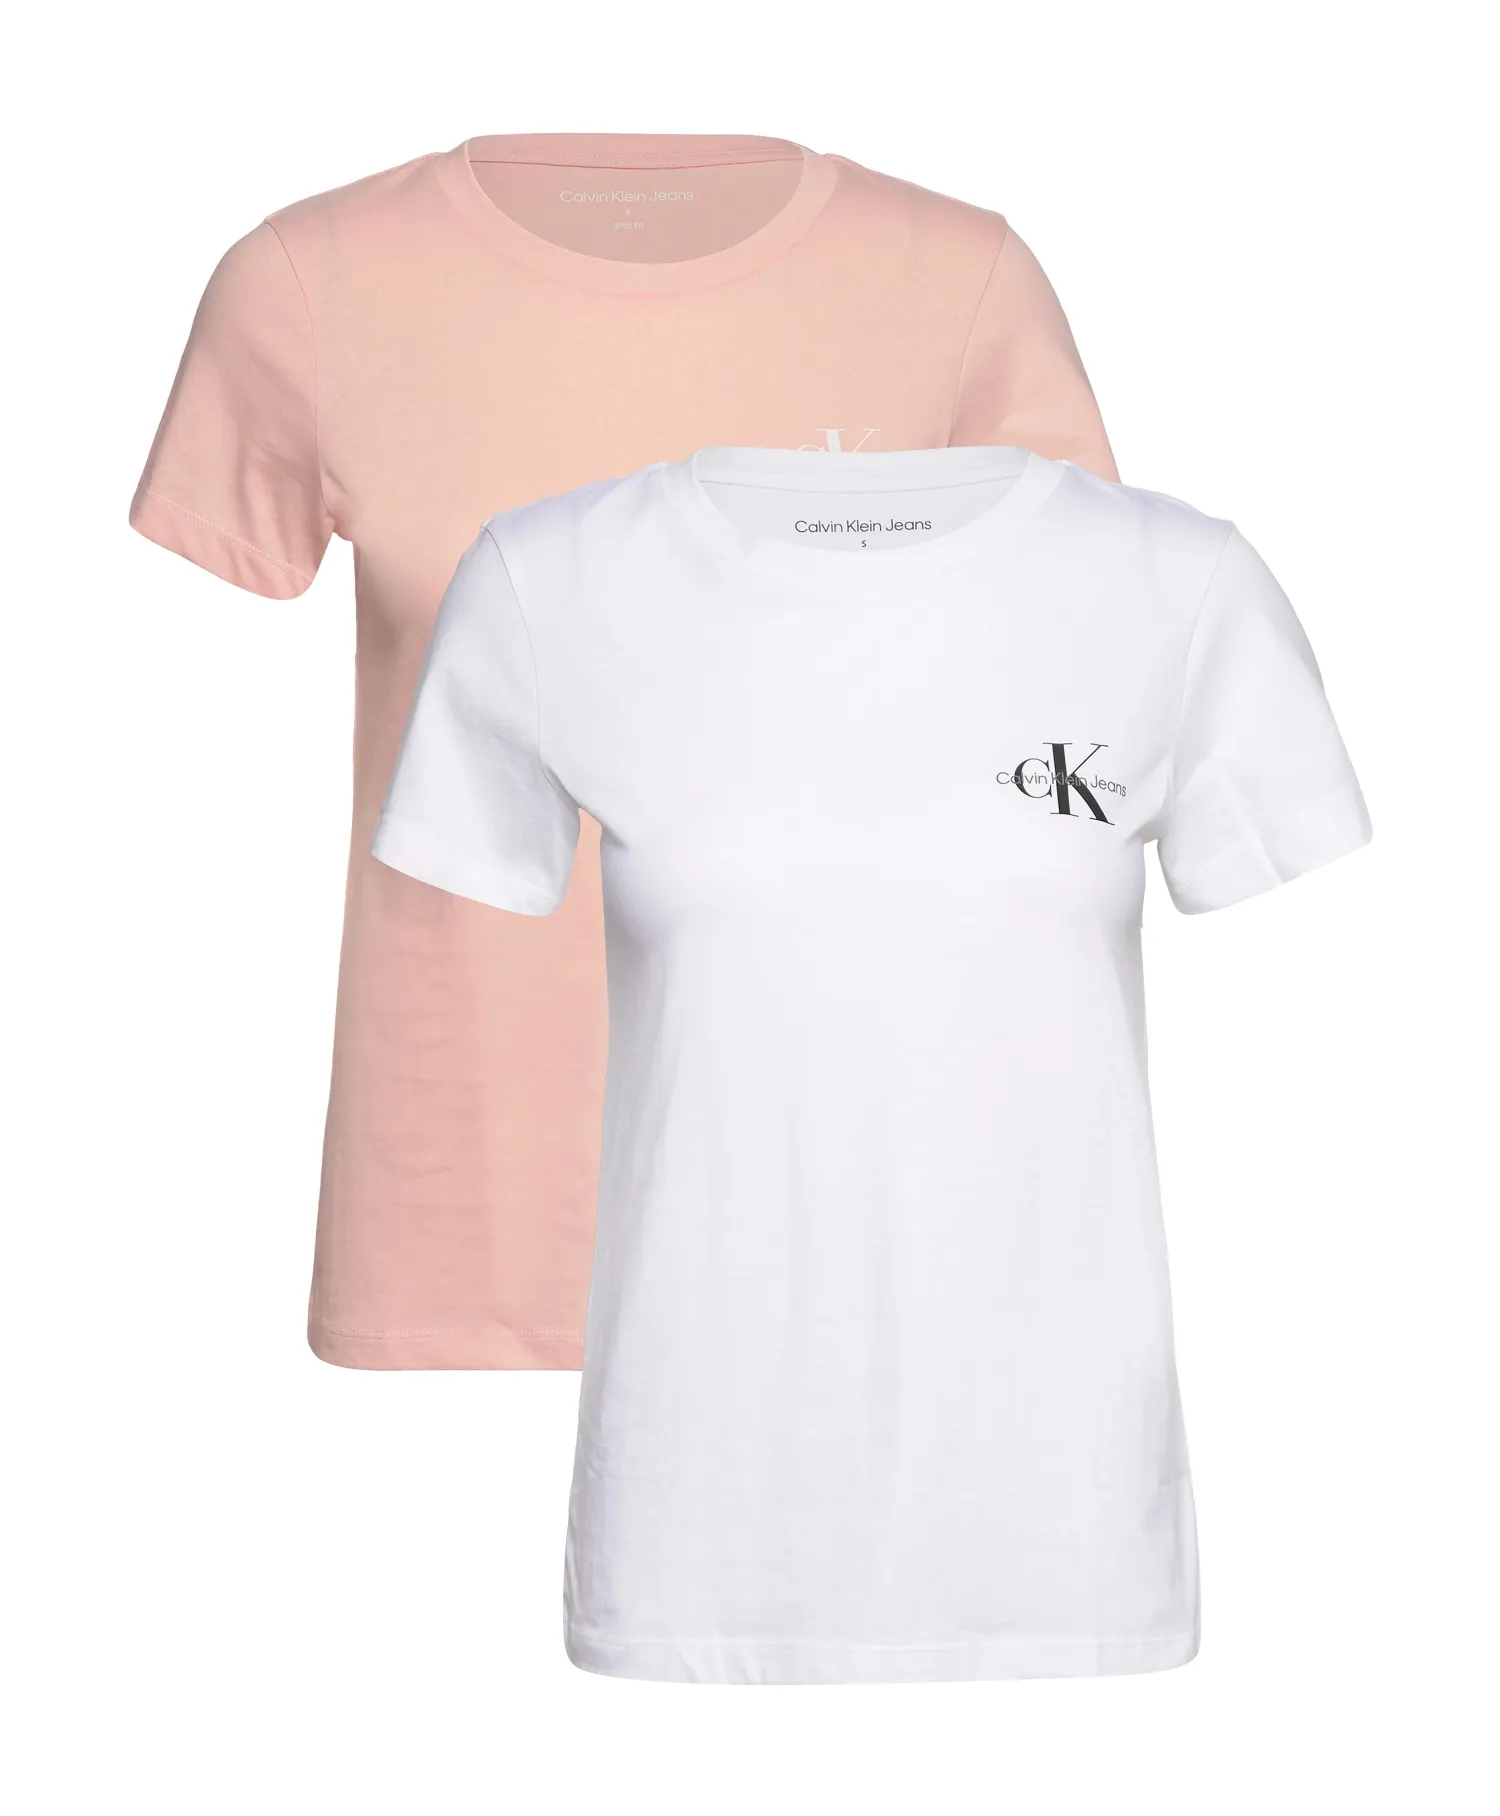 CALVIN KLEIN JEANS 2 | - Slim Faint Blossom/Bright Pack T-Shirt White Choice+Attitude